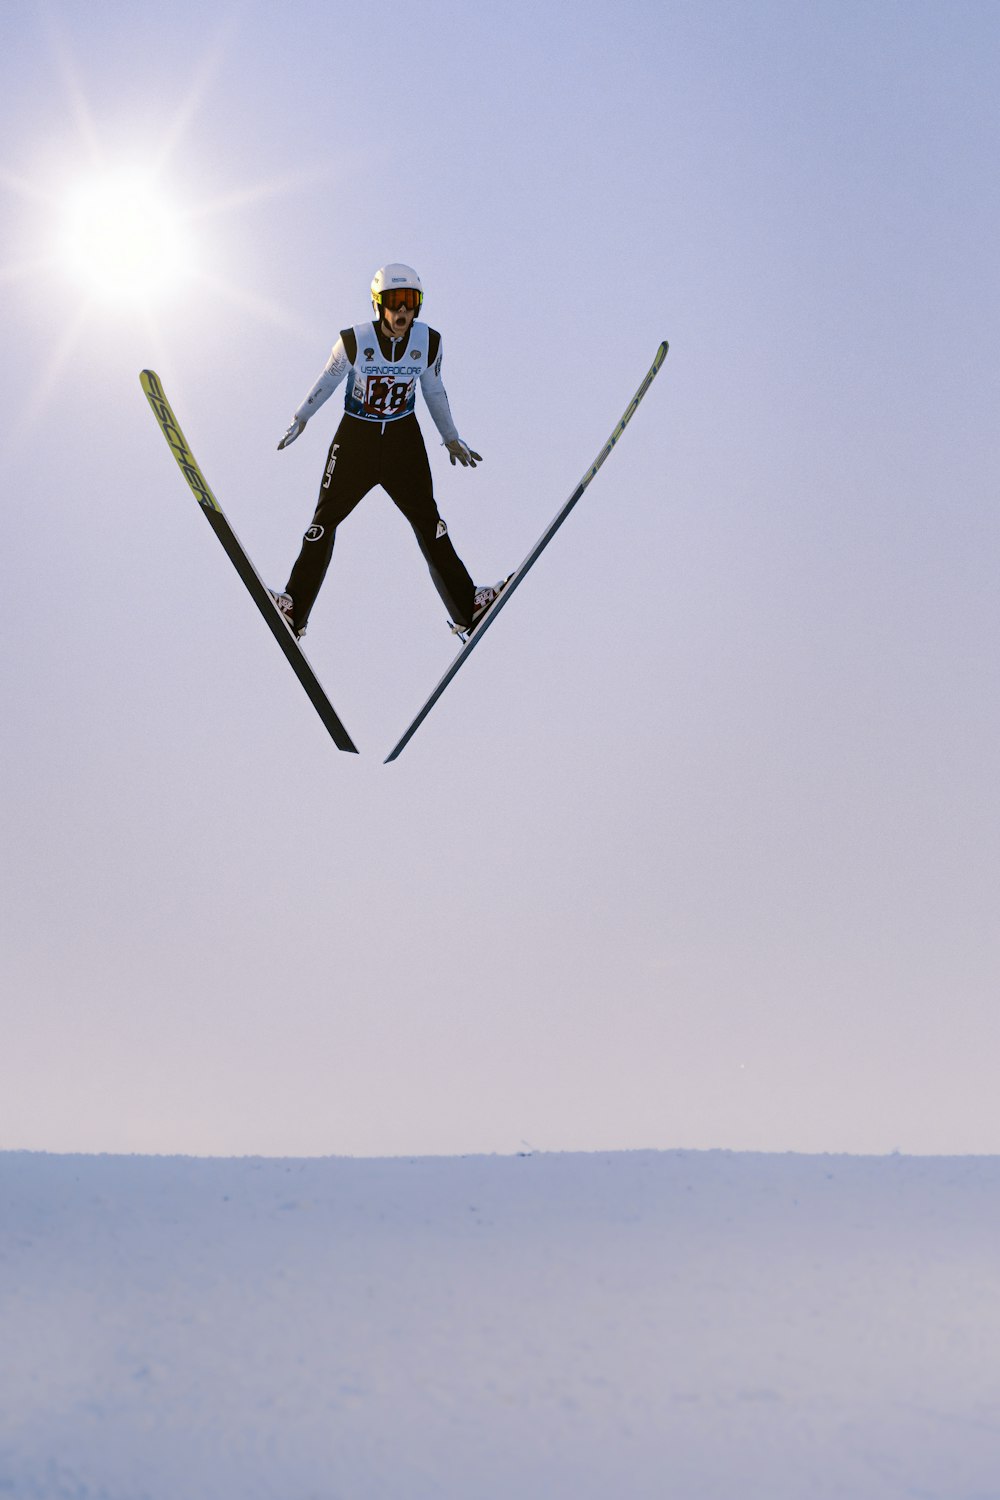 Un homme volant dans les airs tout en faisant du ski